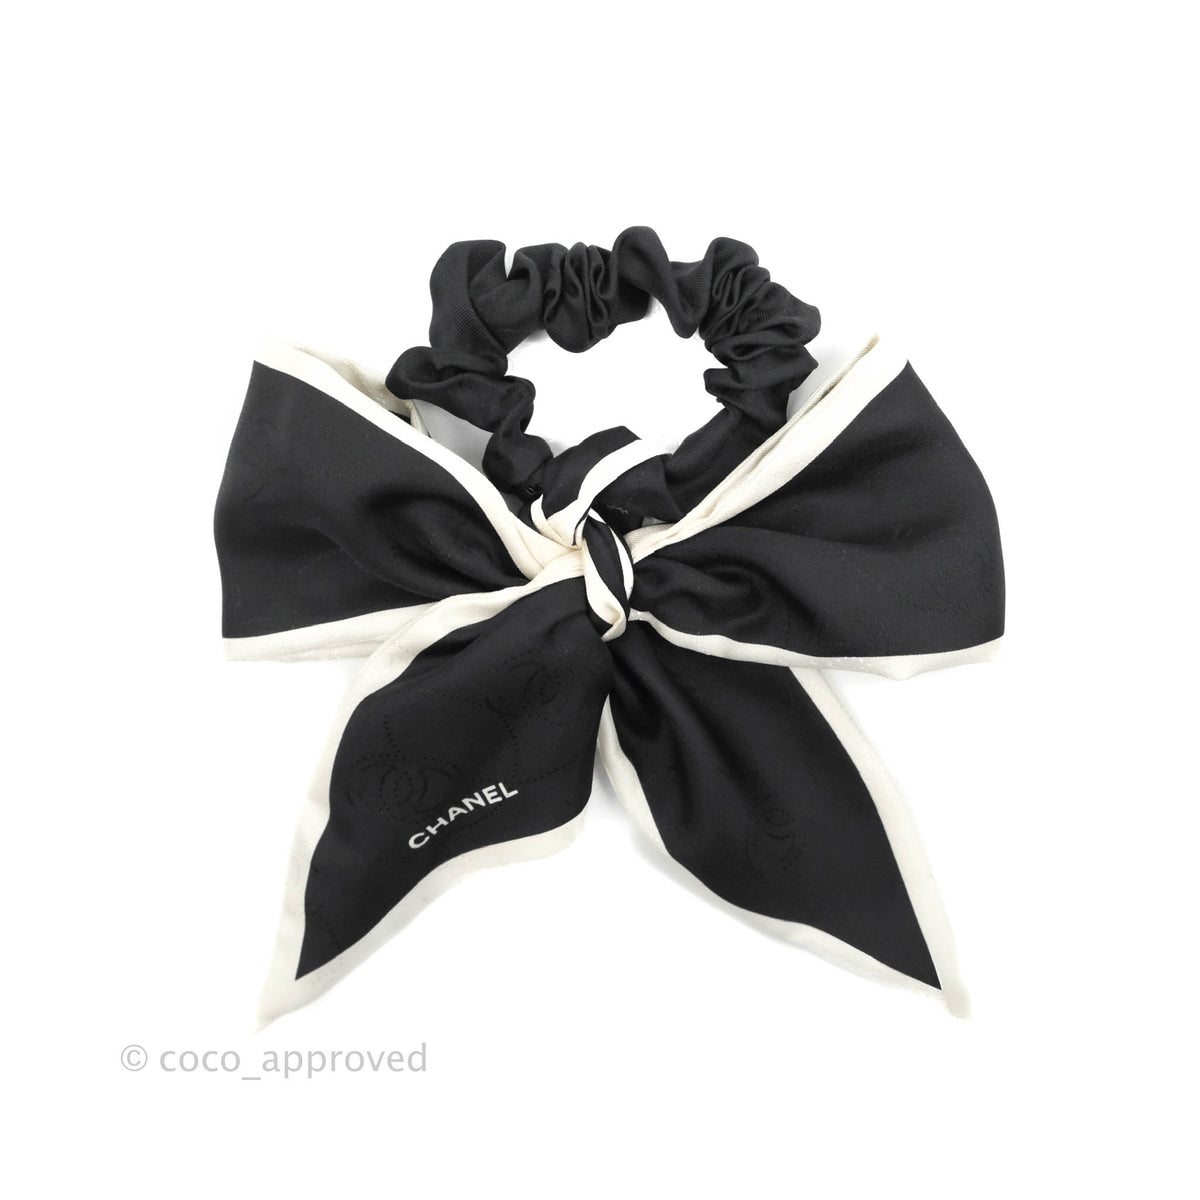 Cc silk hair accessory Chanel Black in Silk - 30859056